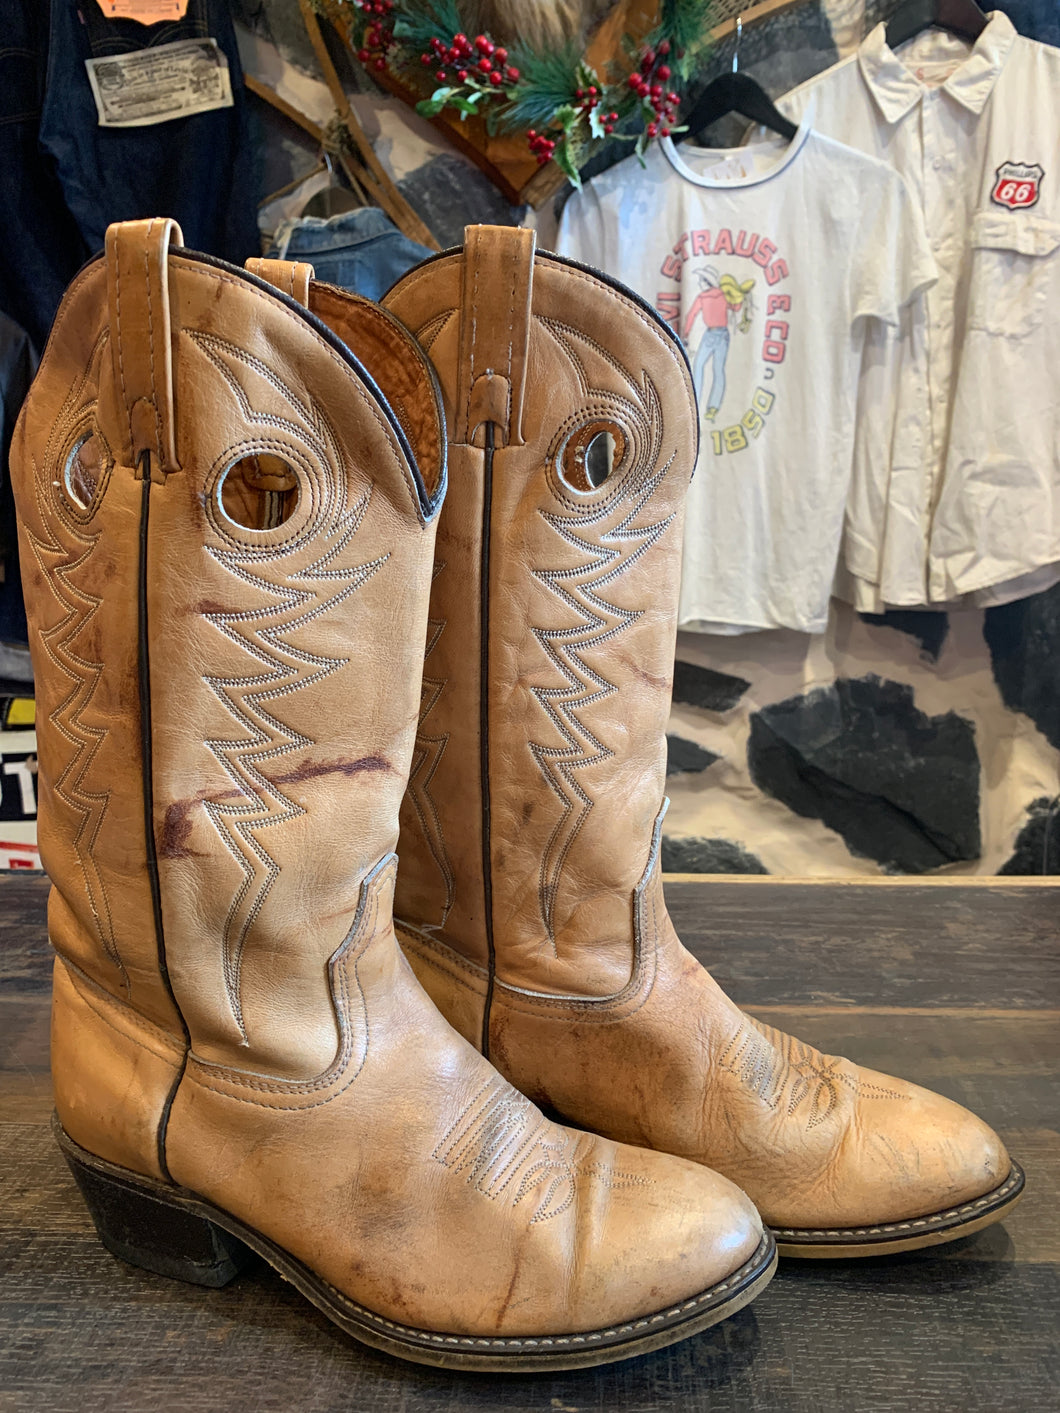 Vintage Laredo Boots, 8d